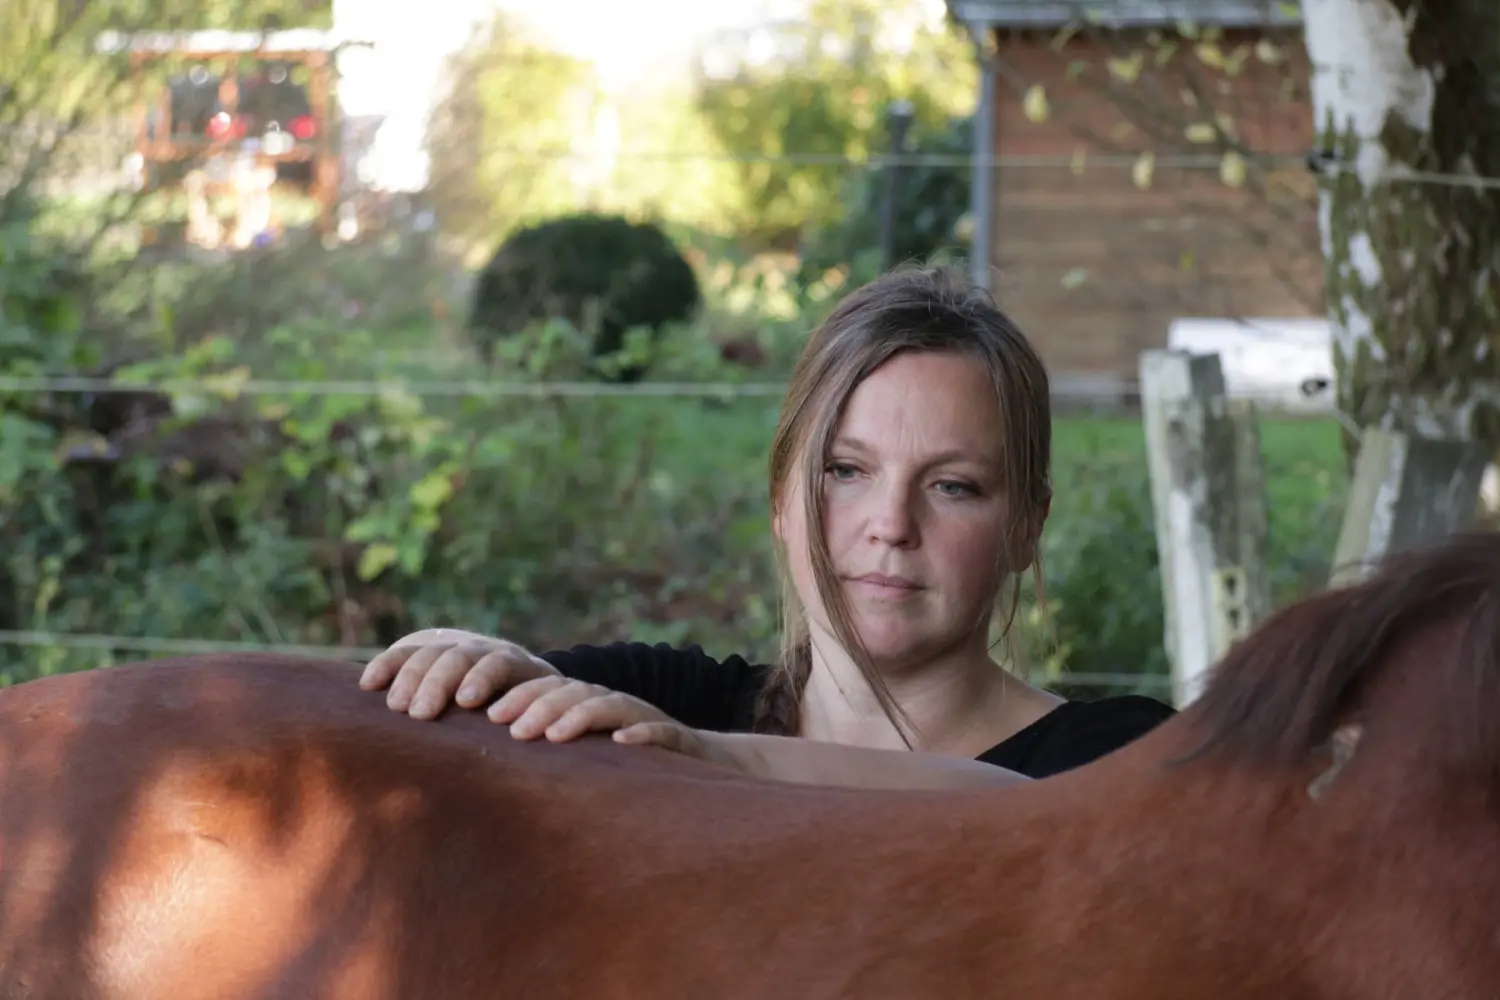 Frau mit Pferd Jana Vagedes Osteopathie & Physiotherapie für Pferde